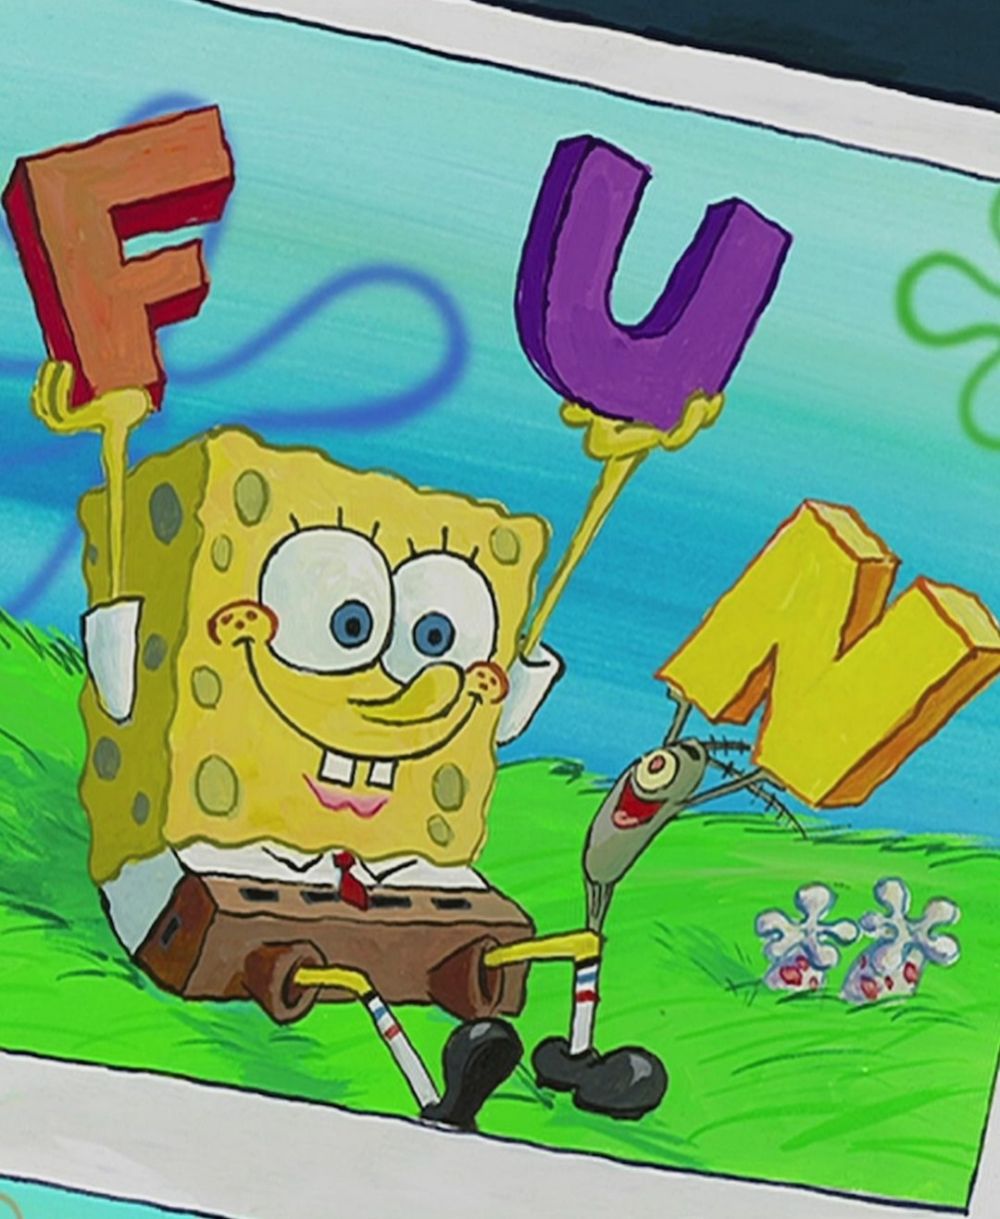 10 Quotes SpongeBob tentang Persahabatan, Maknanya Mendalam!